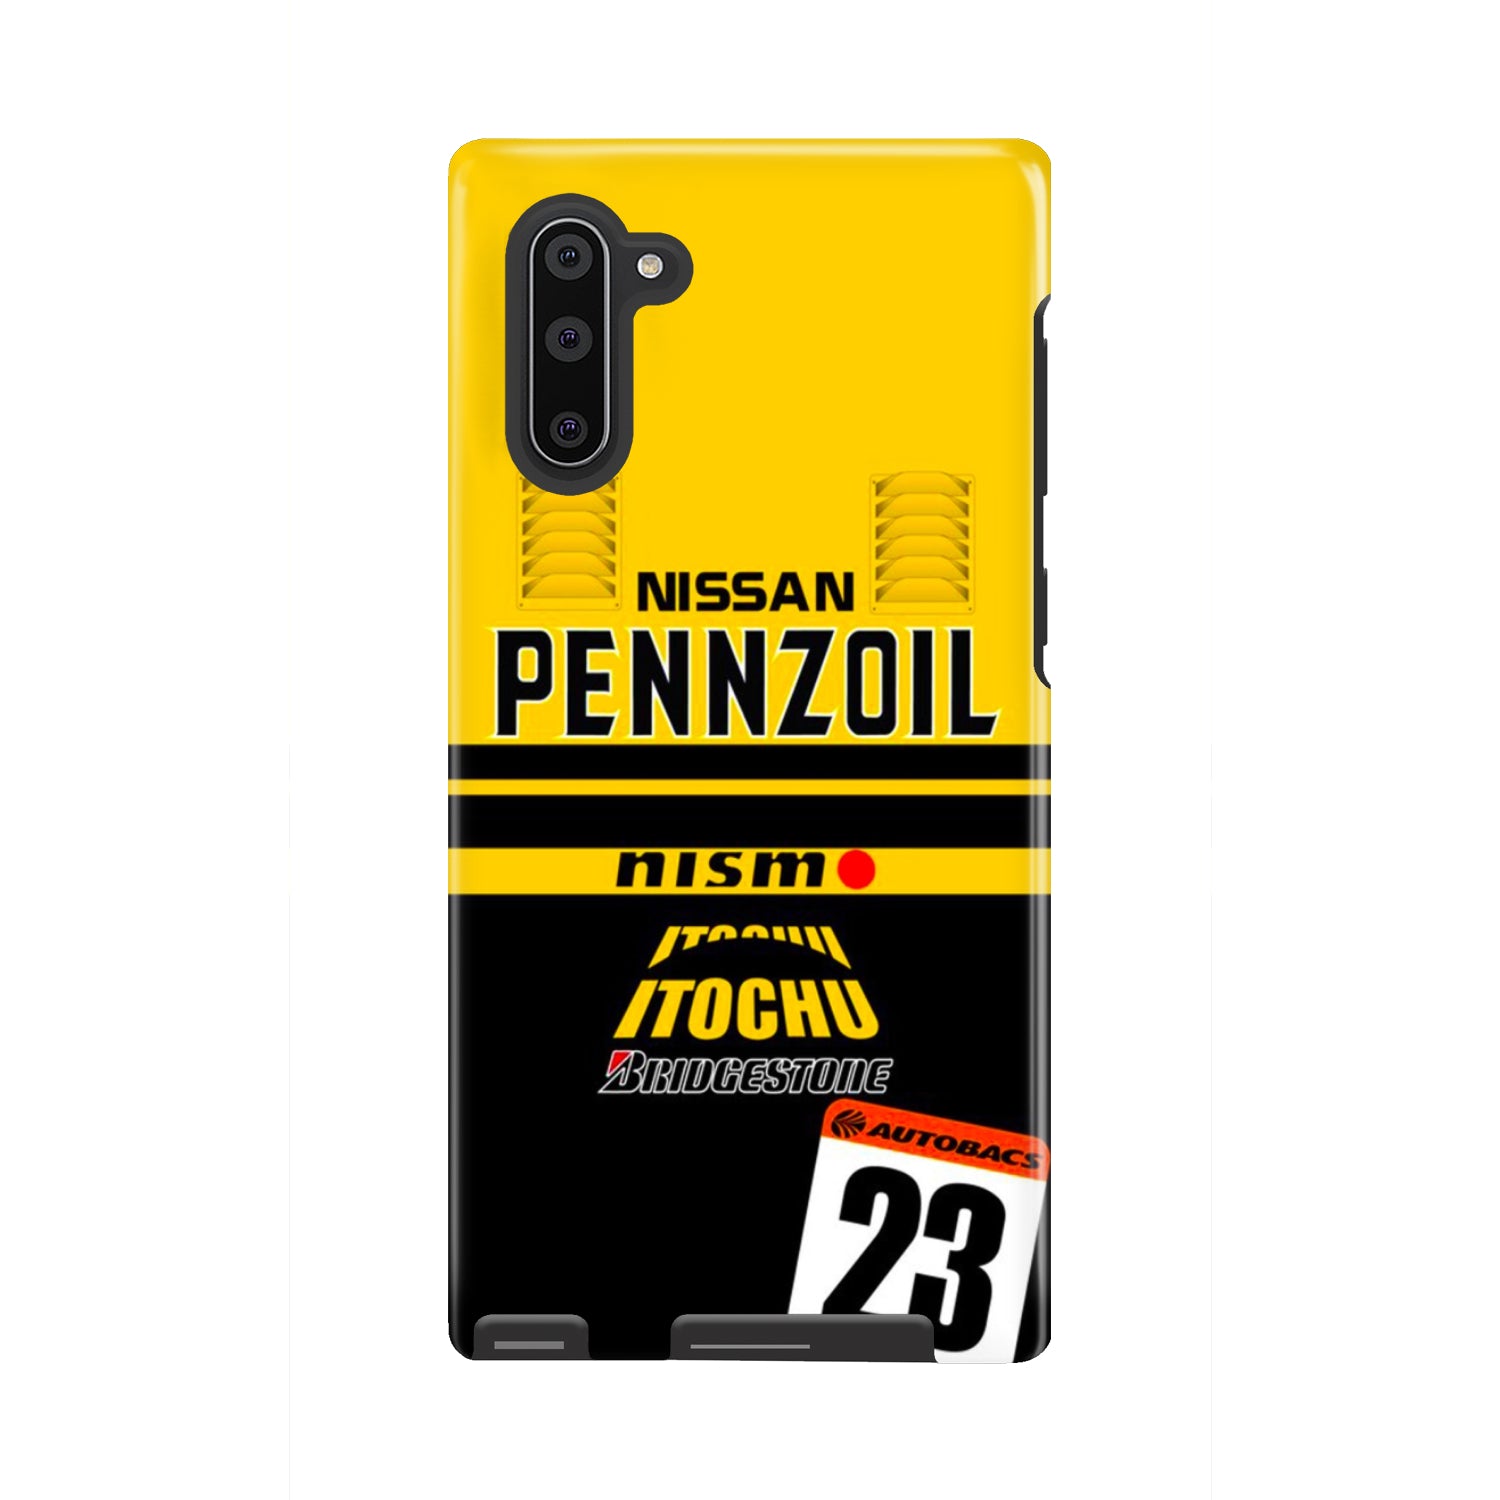 Nissan Pennzoil Phone Case